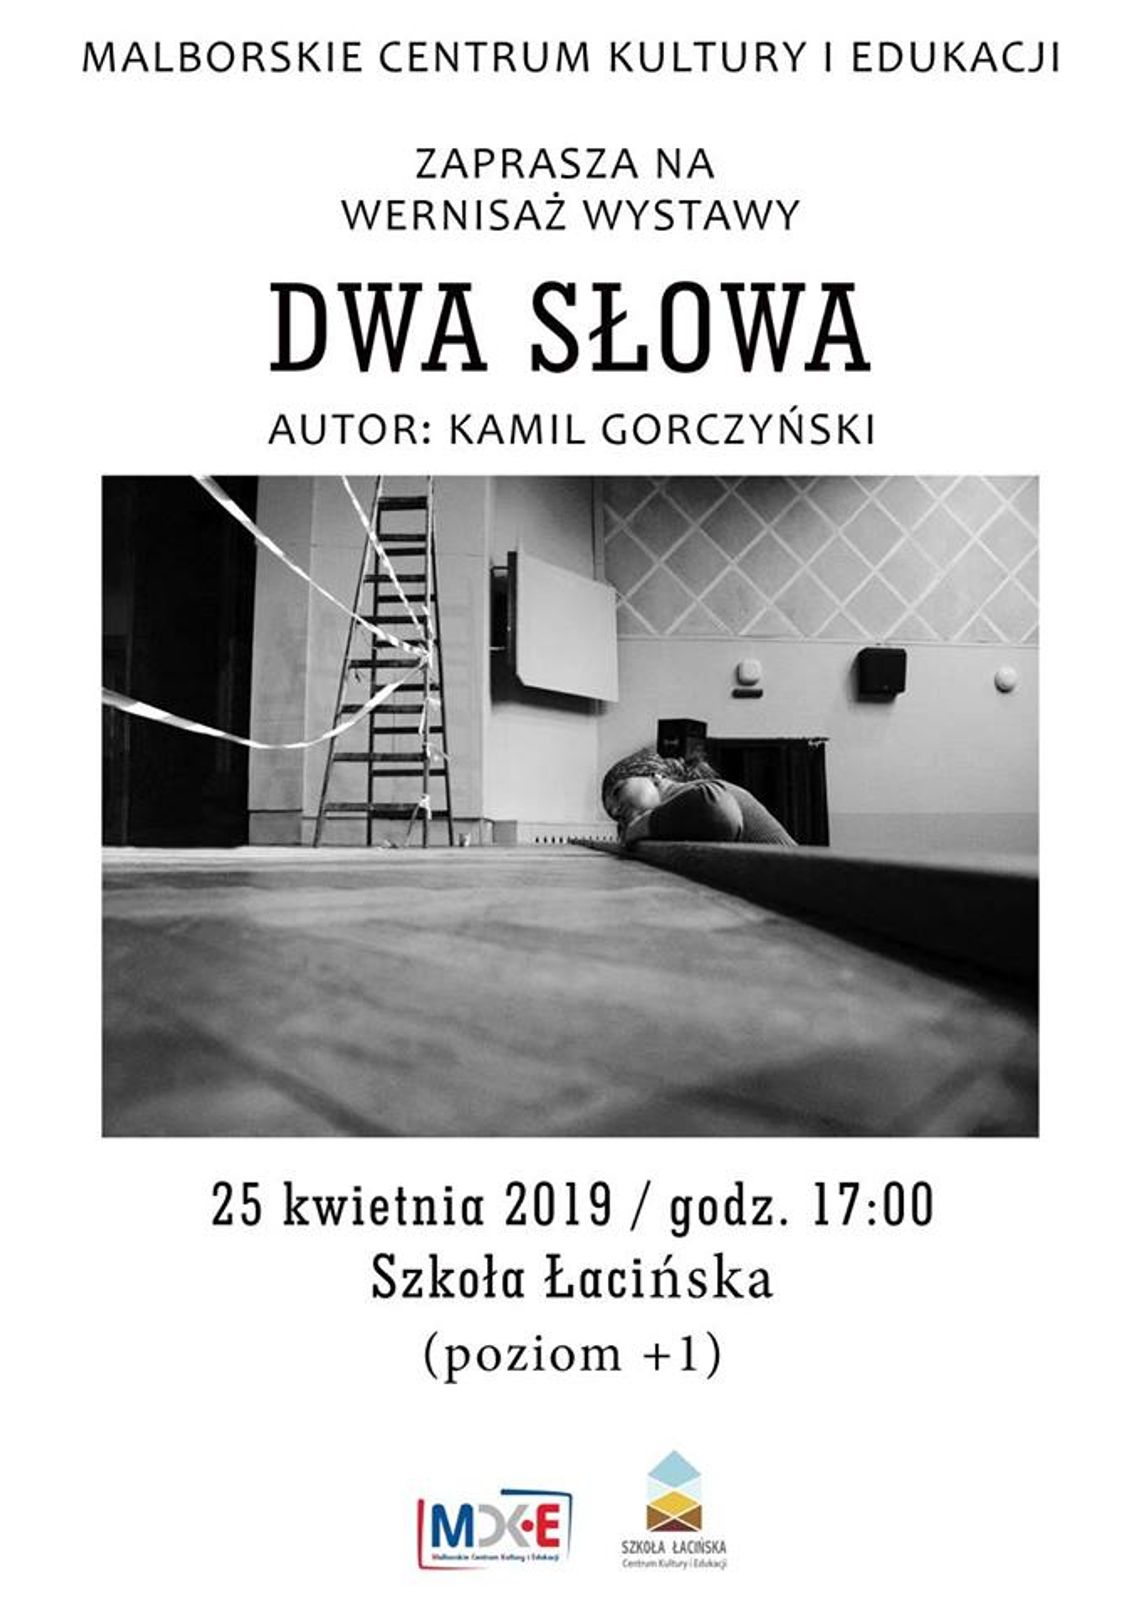 Wernisaż wystawy „Dwa Słowa” Kamila Gorczyńskiego